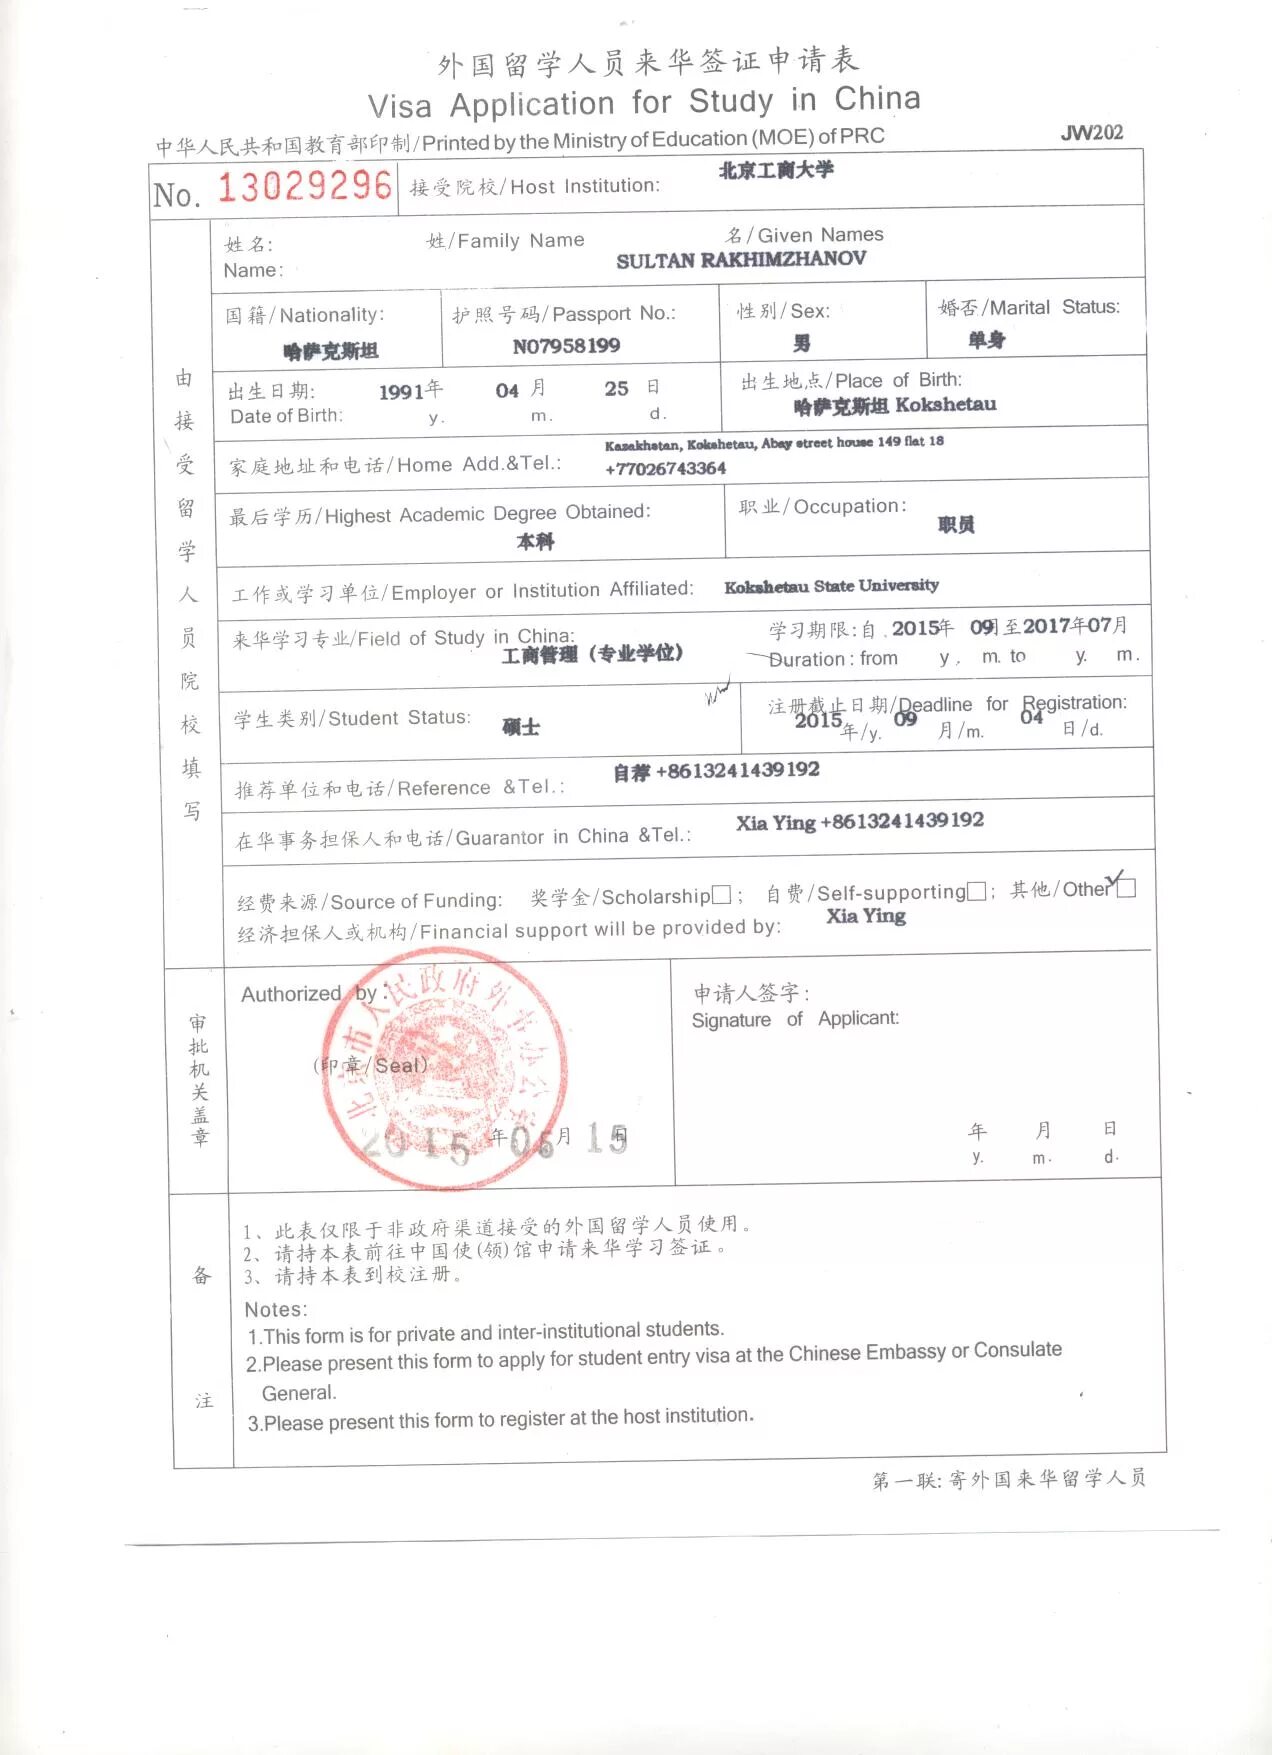 Виза в китай анкета. Форма jw201/202. Форма 202 для визы в Китай. Анкета для визы в Китай 2015. Форма jw201 или jw202.